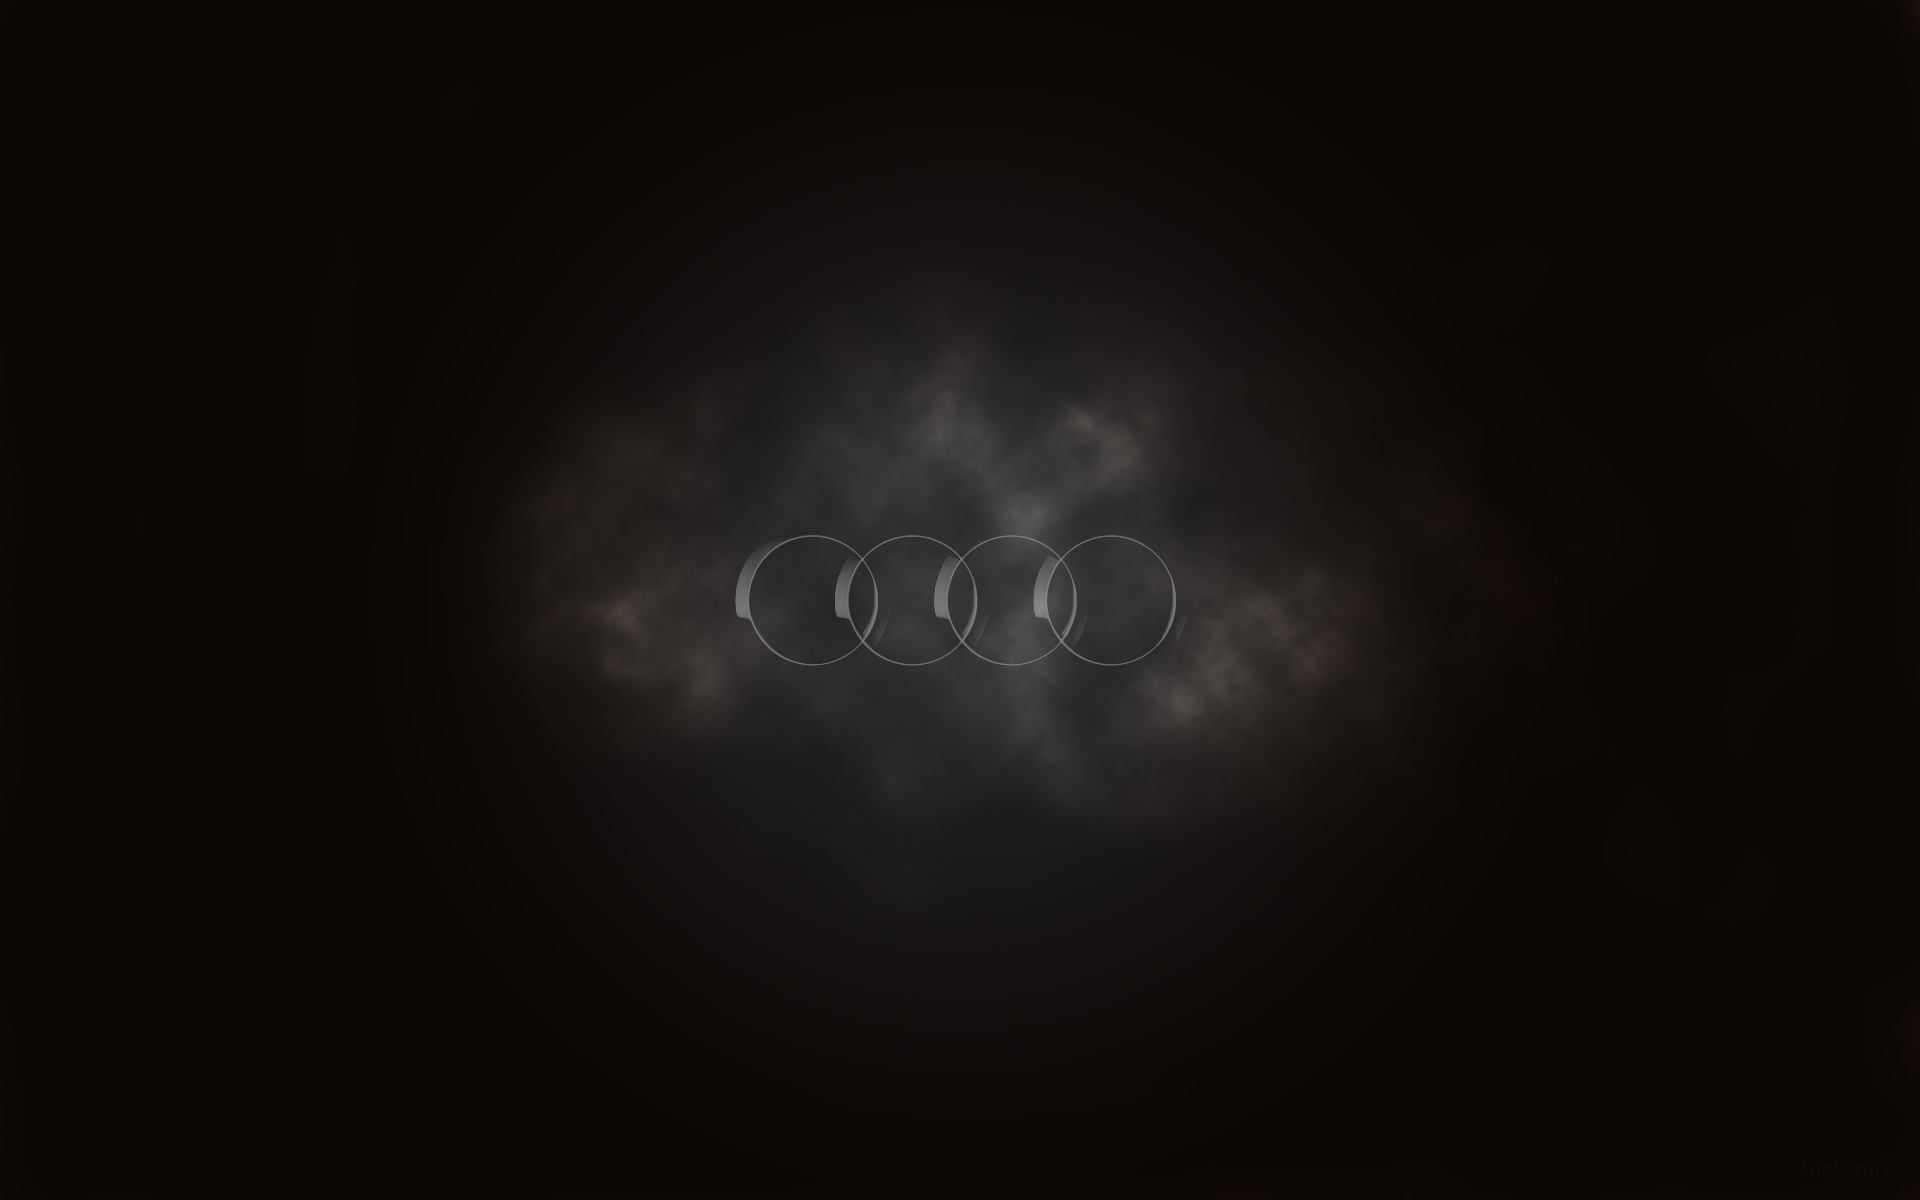 Audi Rings Wallpaper